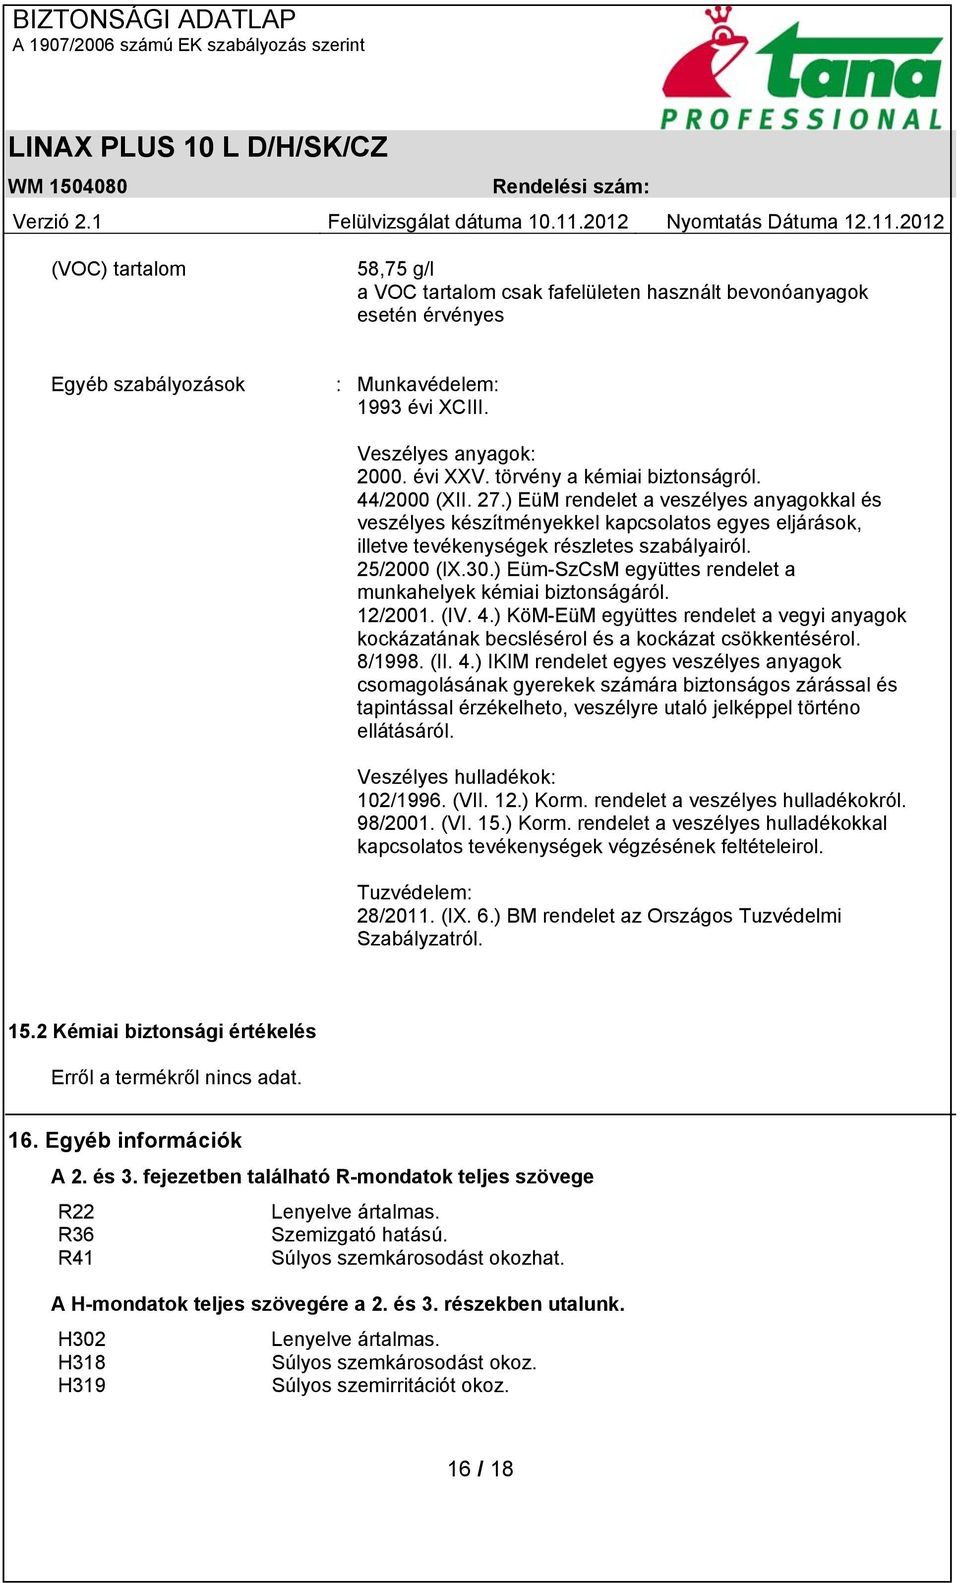 25/2000 (IX.30.) Eüm-SzCsM együttes rendelet a munkahelyek kémiai biztonságáról. 12/2001. (IV. 4.) KöM-EüM együttes rendelet a vegyi anyagok kockázatának becslésérol és a kockázat csökkentésérol.